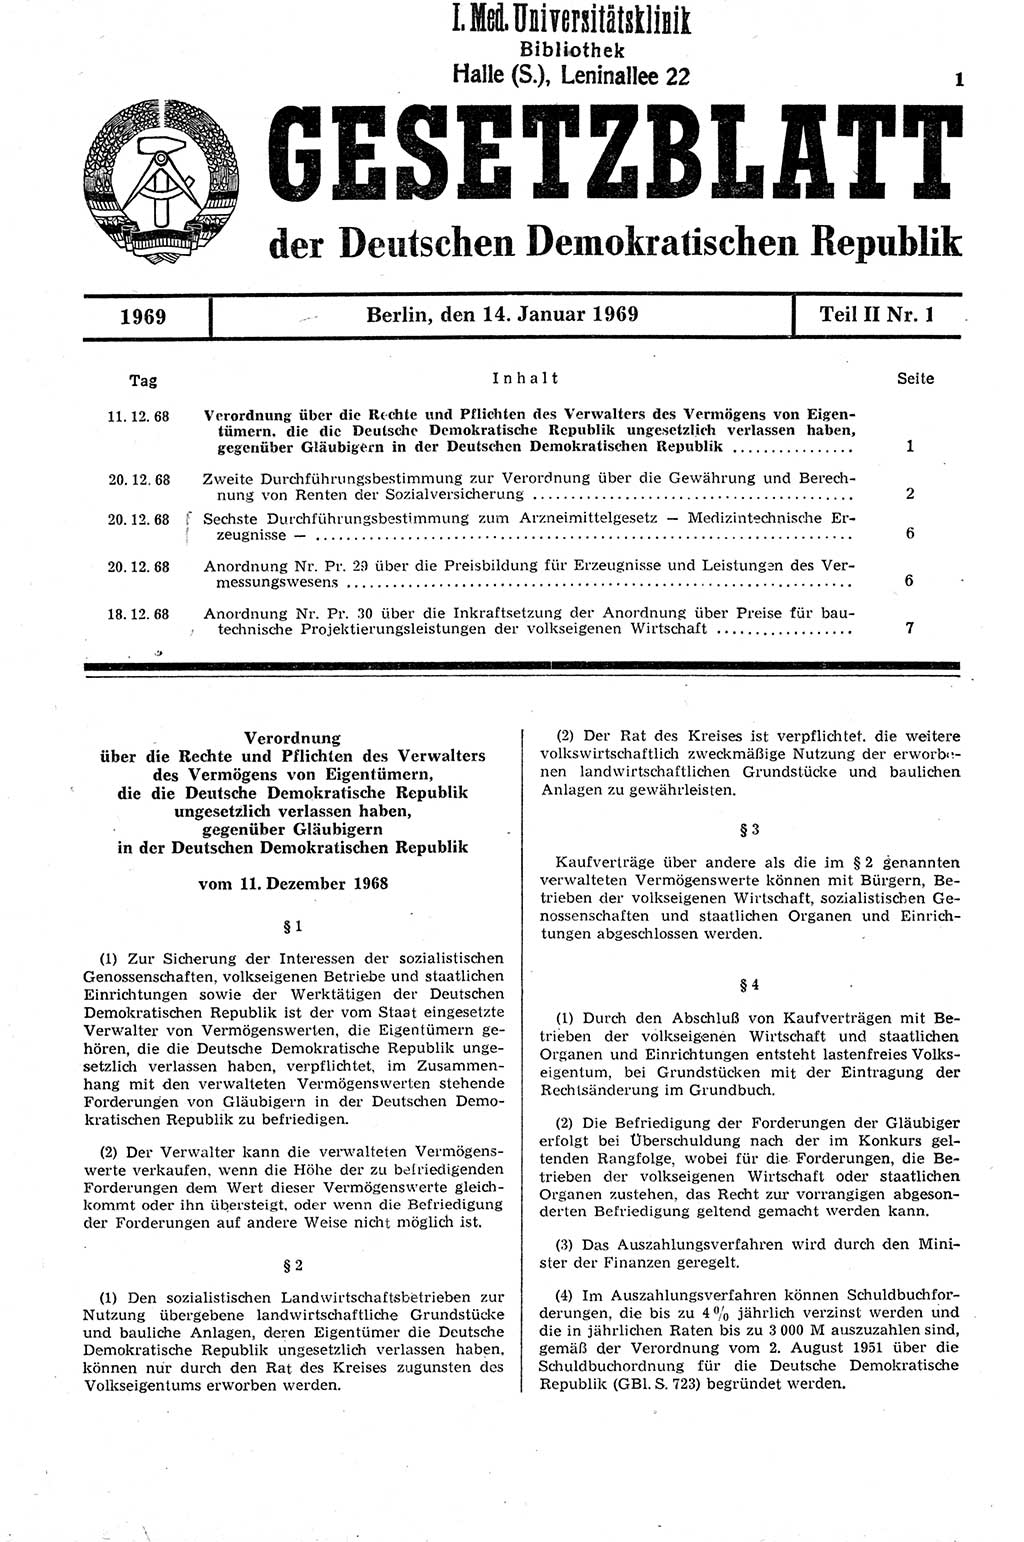 Gesetzblatt (GBl.) der Deutschen Demokratischen Republik (DDR) Teil ⅠⅠ 1969, Seite 1 (GBl. DDR ⅠⅠ 1969, S. 1)